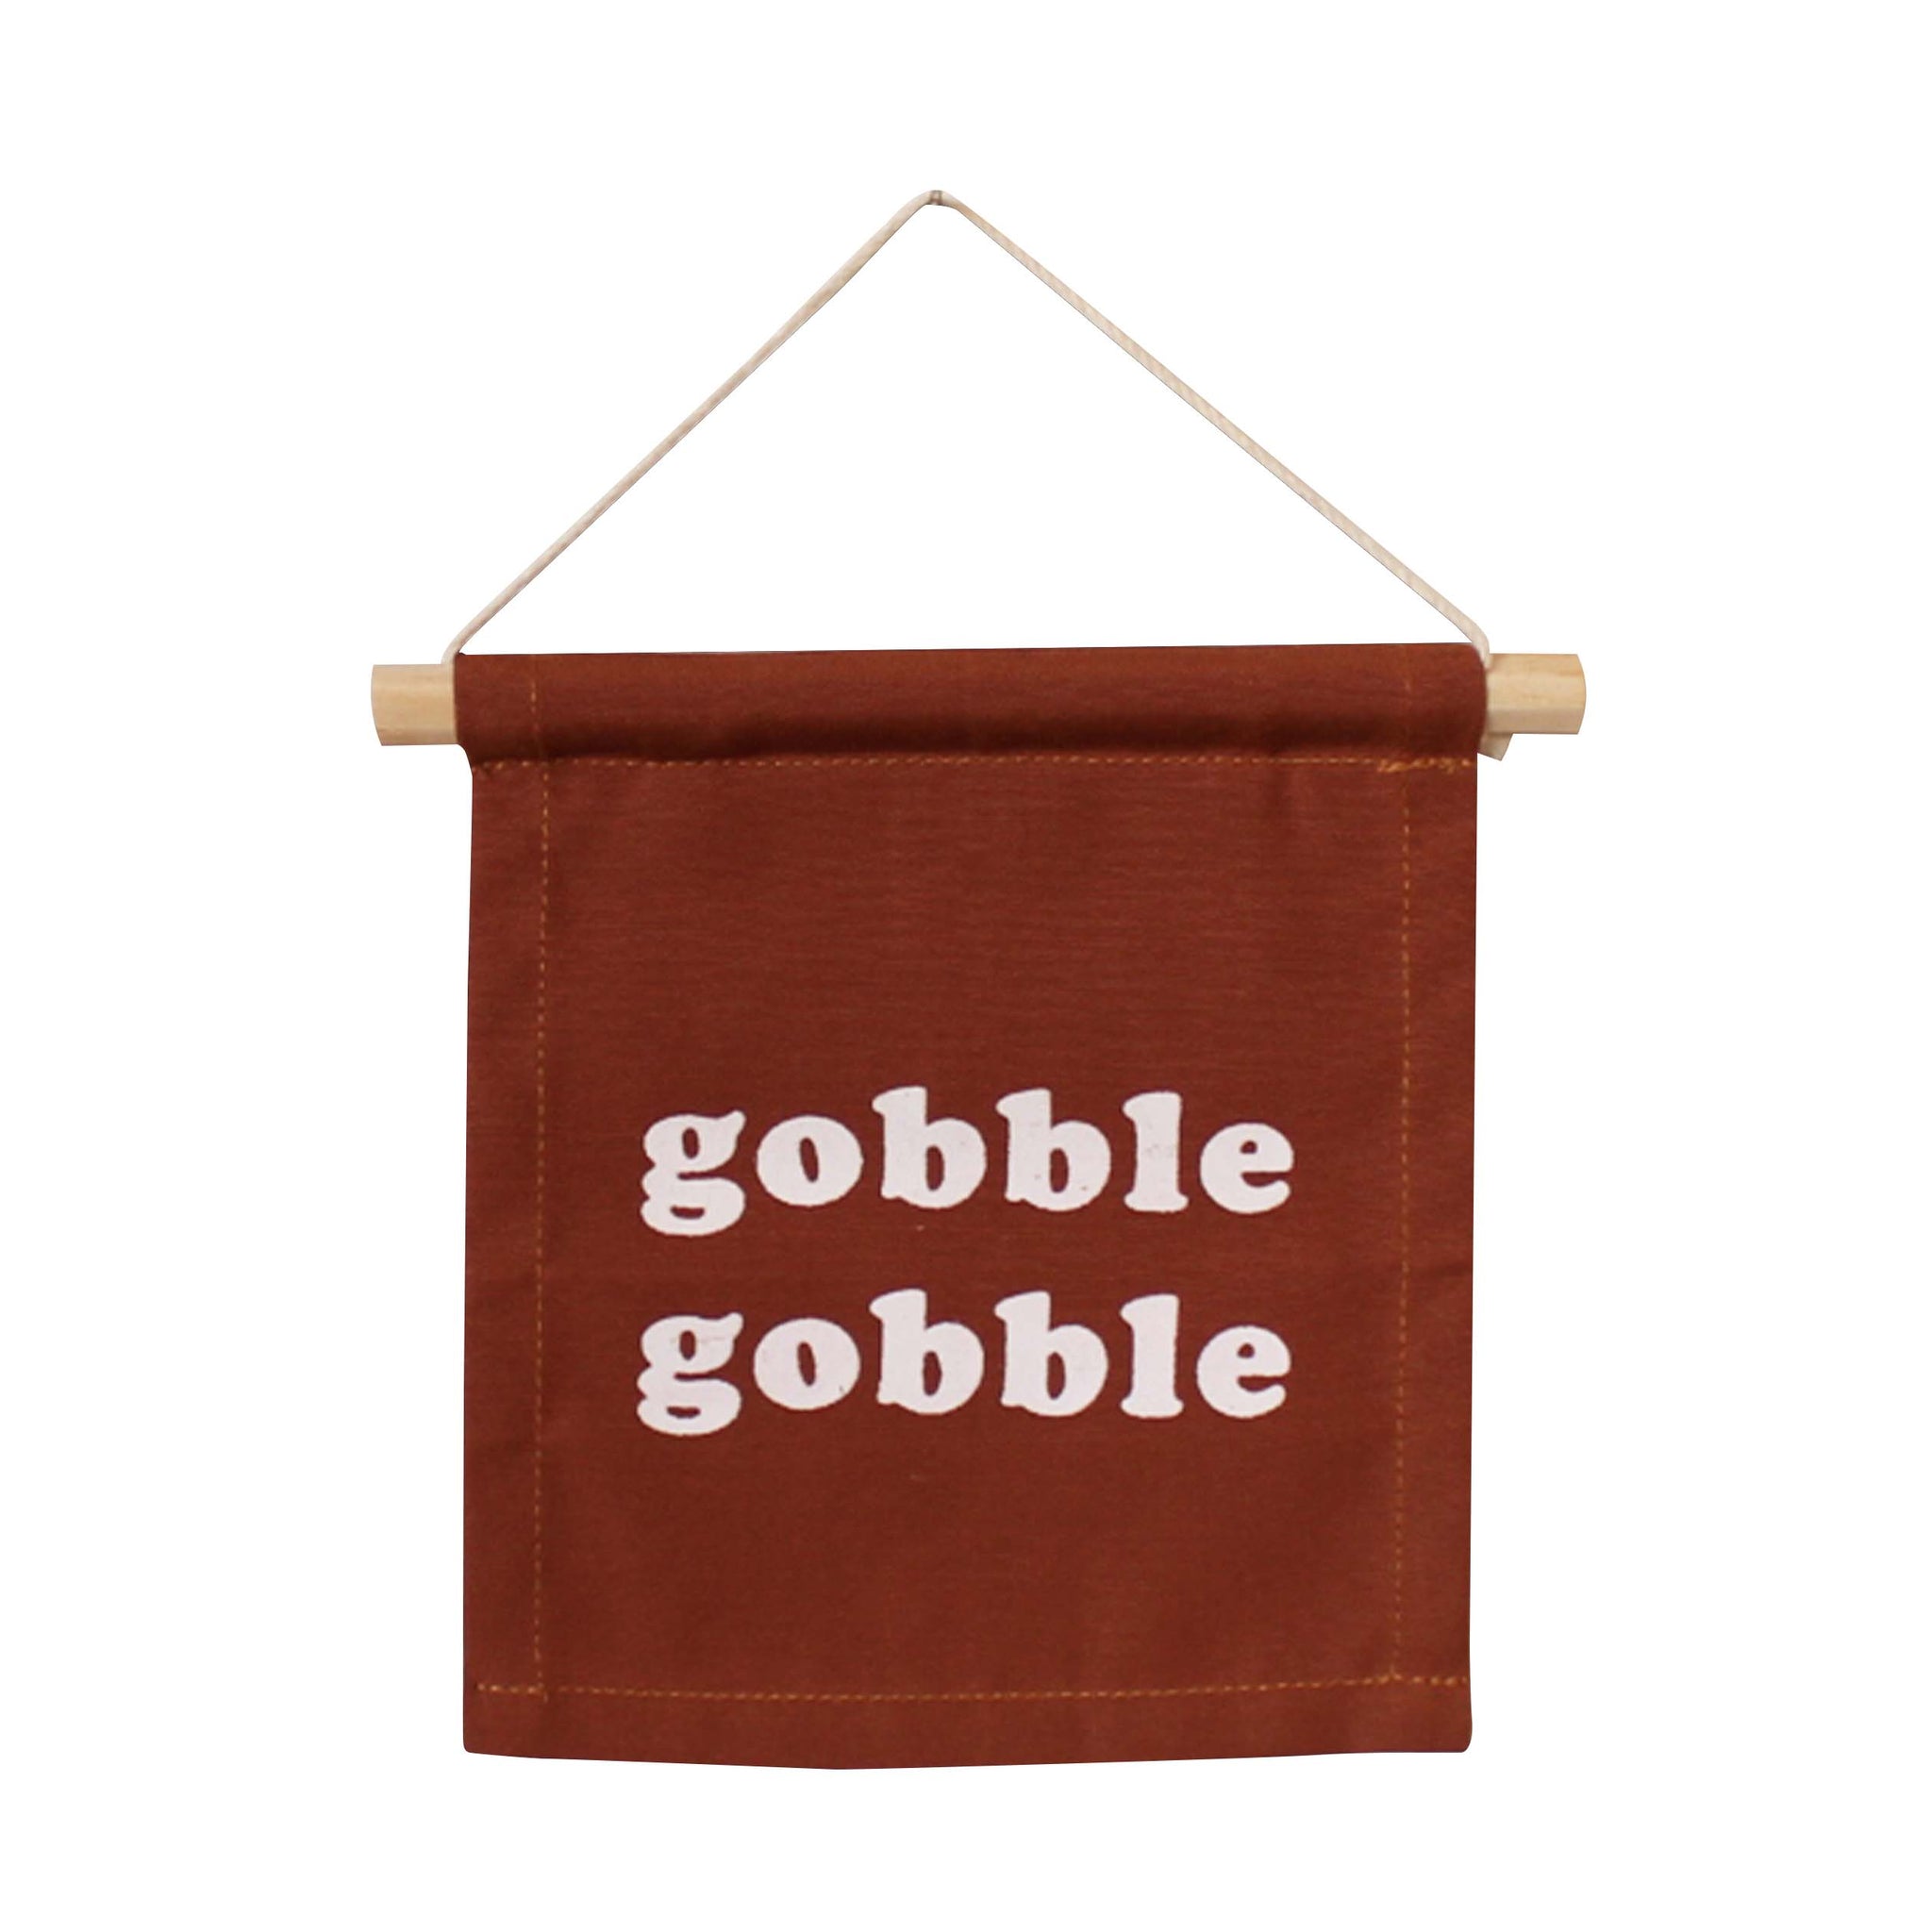 Gobble gobble hang sign